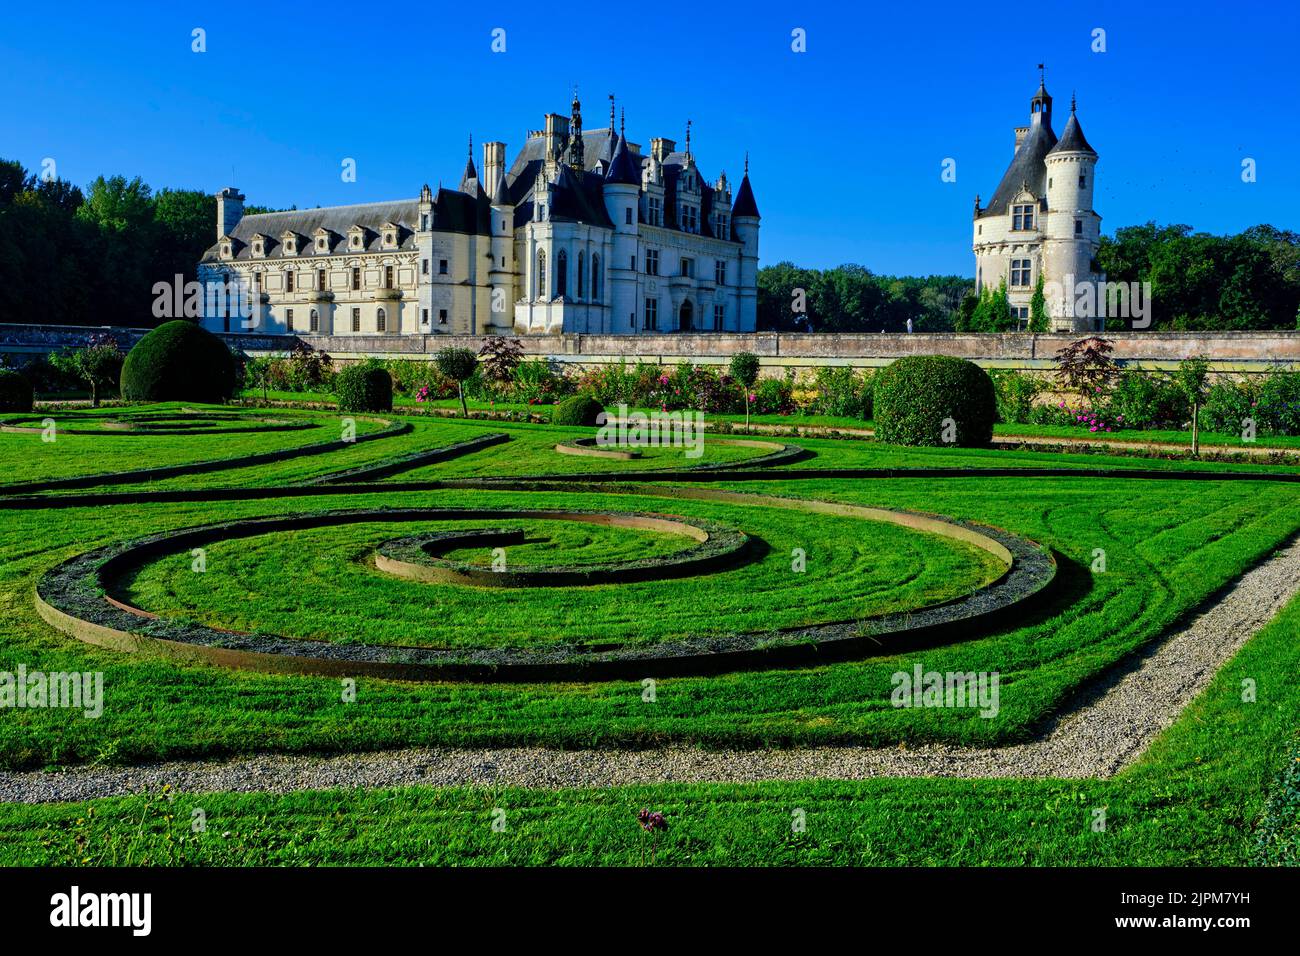 Francia, Indre et Loire, Château de Chenonceau, construido entre 1513 y 1521 en estilo renacentista, los jardines, parterre de Diane de Poitiers Foto de stock